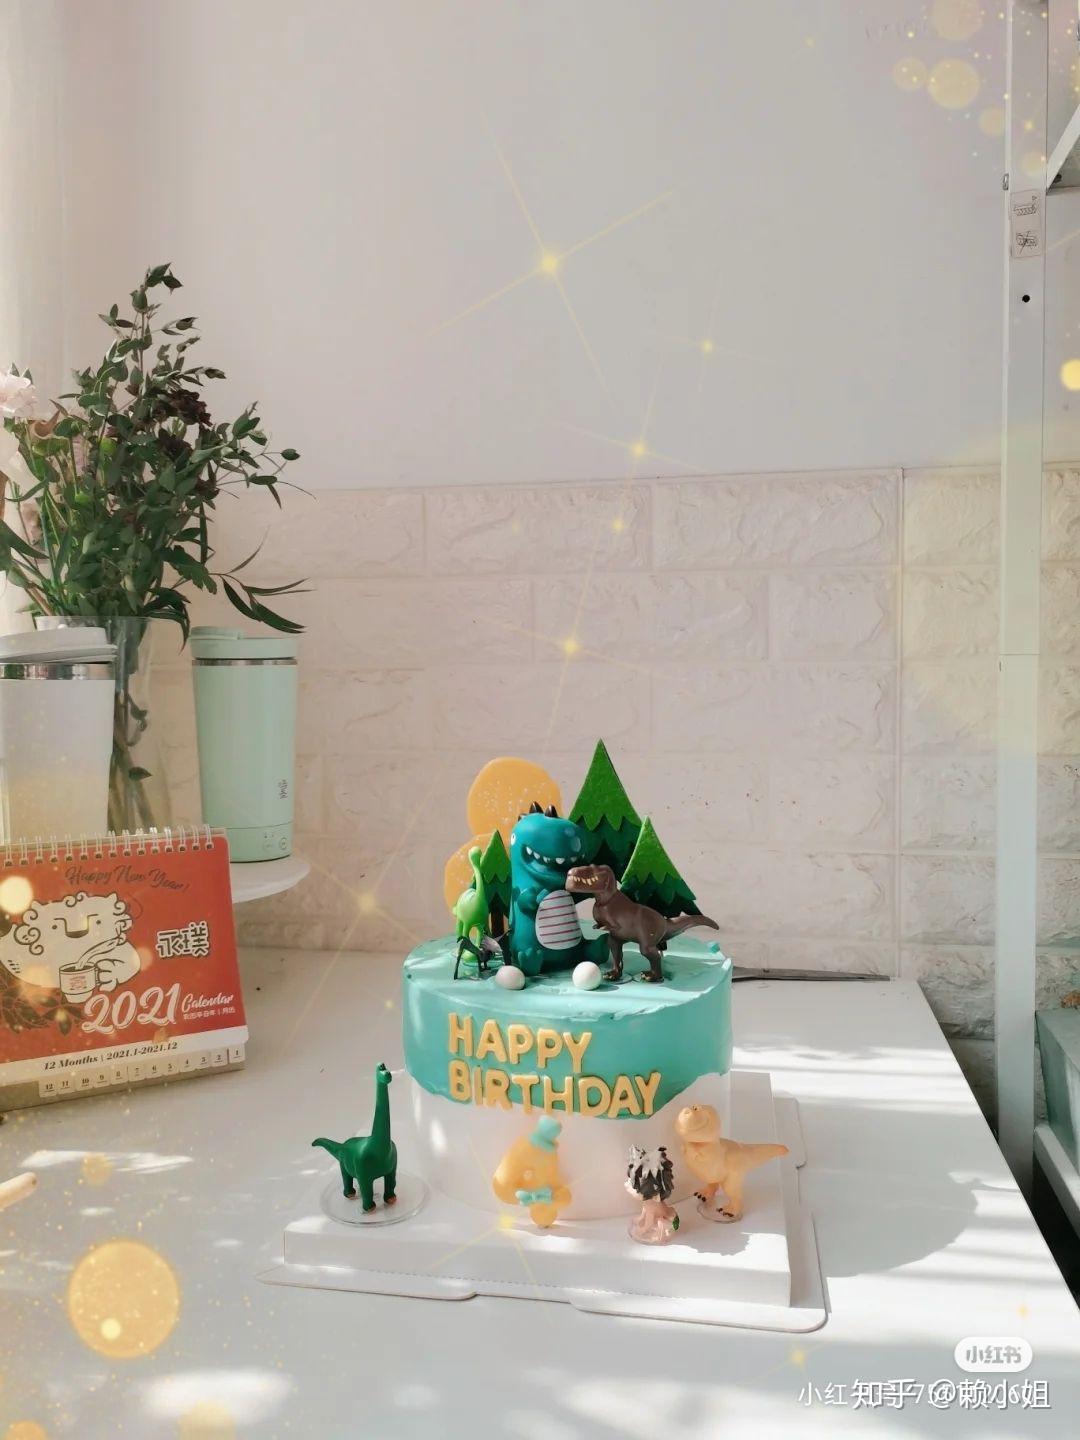 用甜食做成的恐龙形状的自制生日蛋糕 库存照片. 图片 包括有 恐龙, 特写镜头, 活动, 新鲜, 庭院 - 240084908